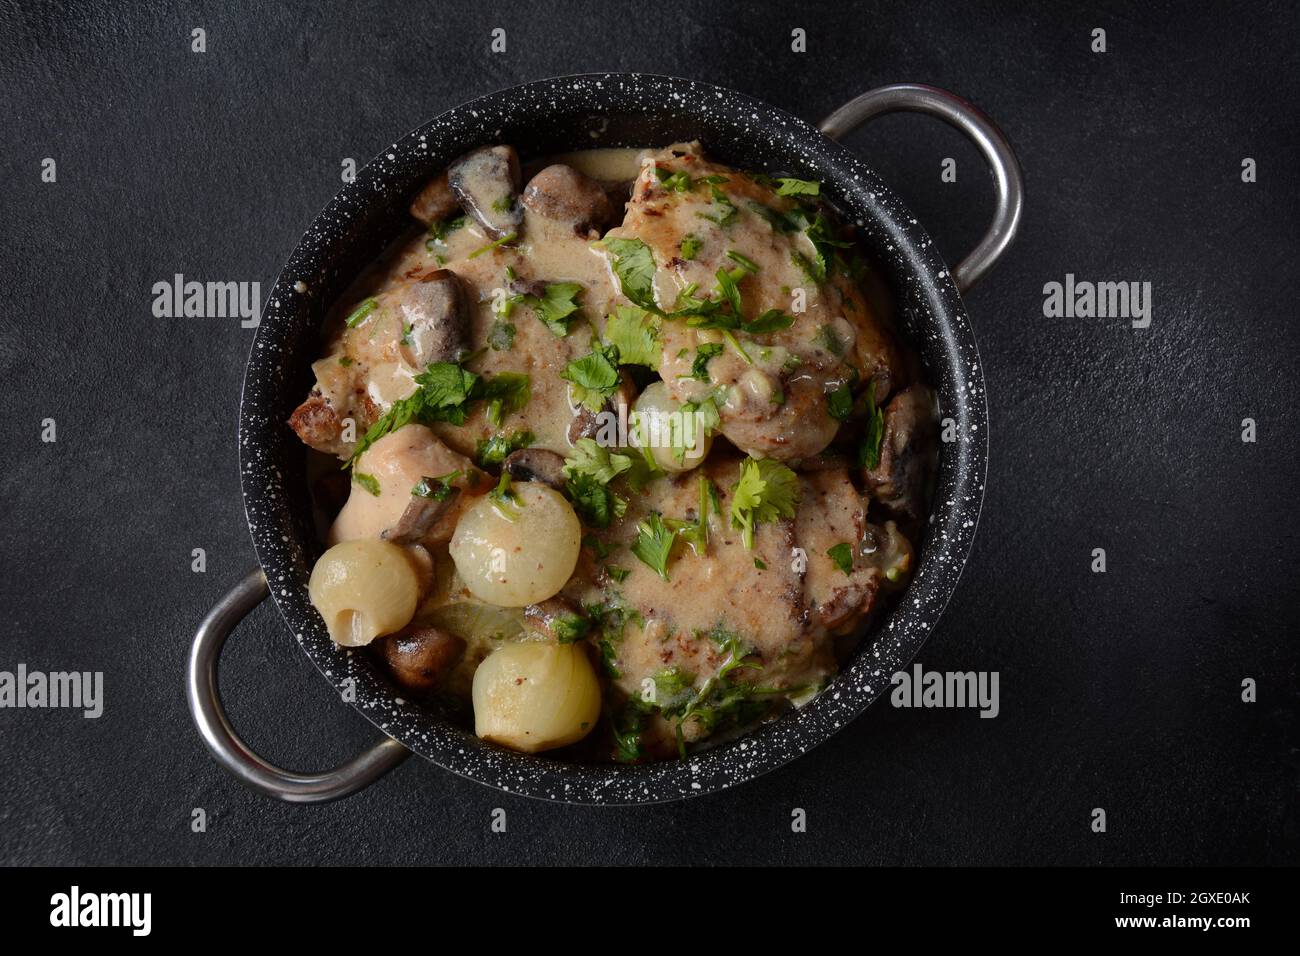 Fricassee - cuisine française. Poulet cuit dans une sauce crémeuse avec des champignons dans une casserole sur une table noire Banque D'Images